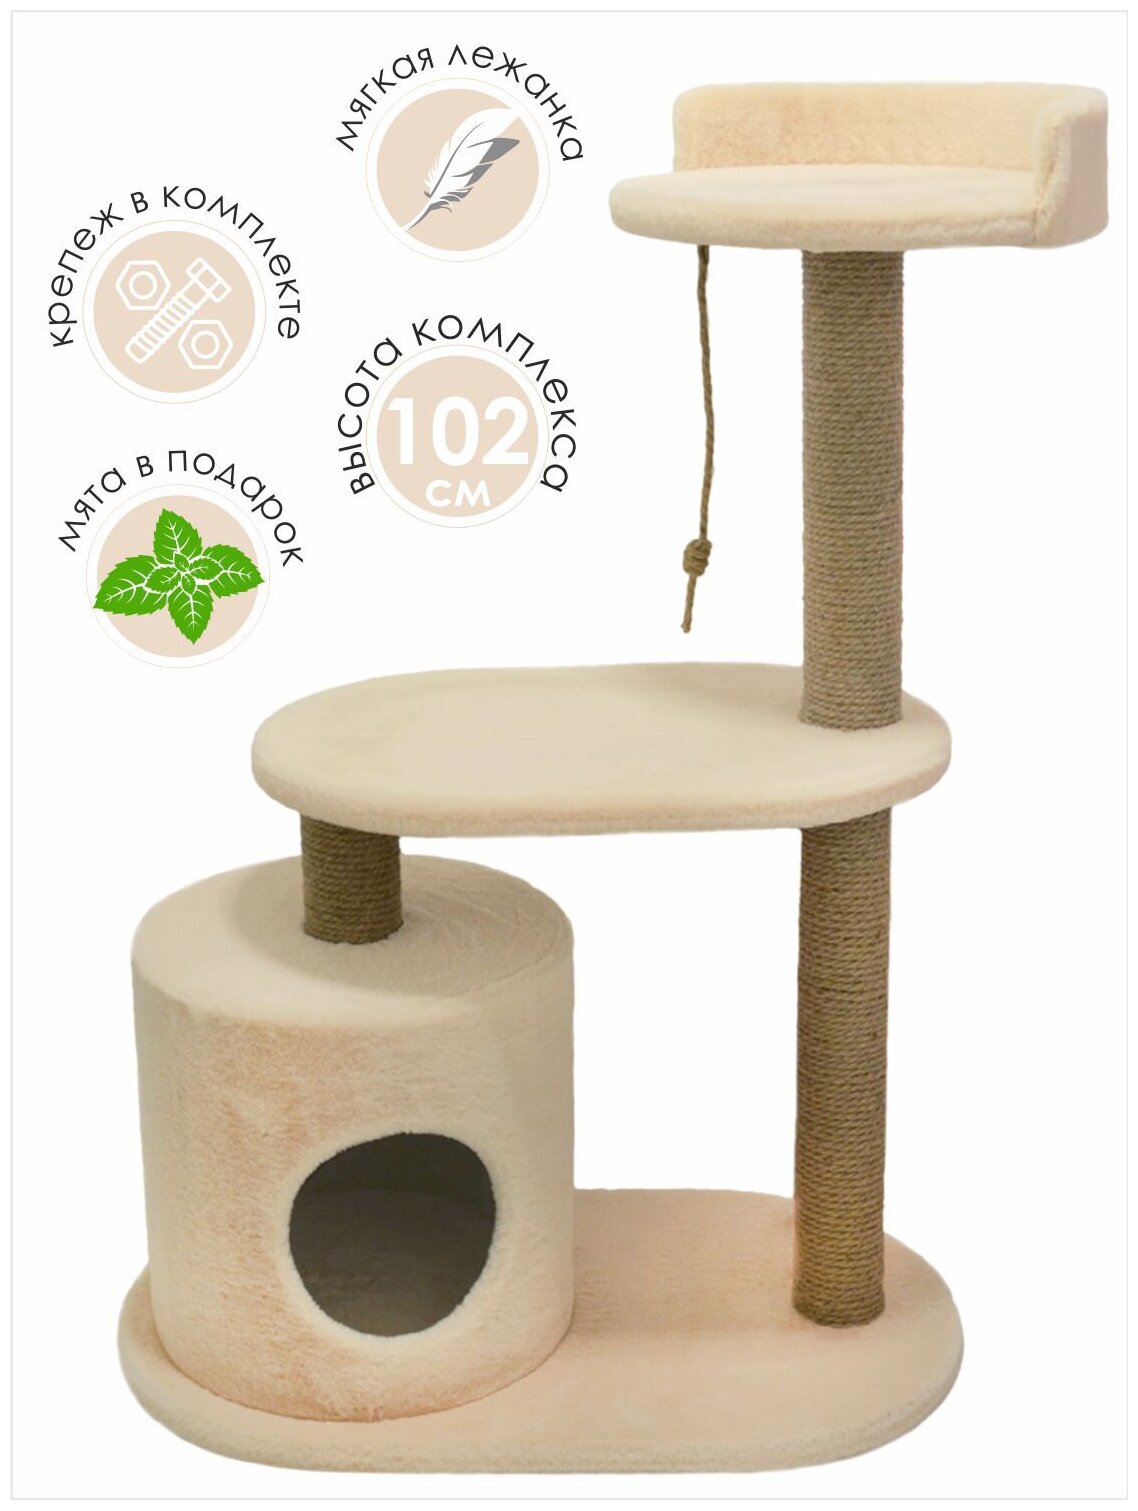 Игровой комплекс - когтеточка для кошек с домиком, лежанкой Коффчег модель Уют 70*40*102 Бежевый